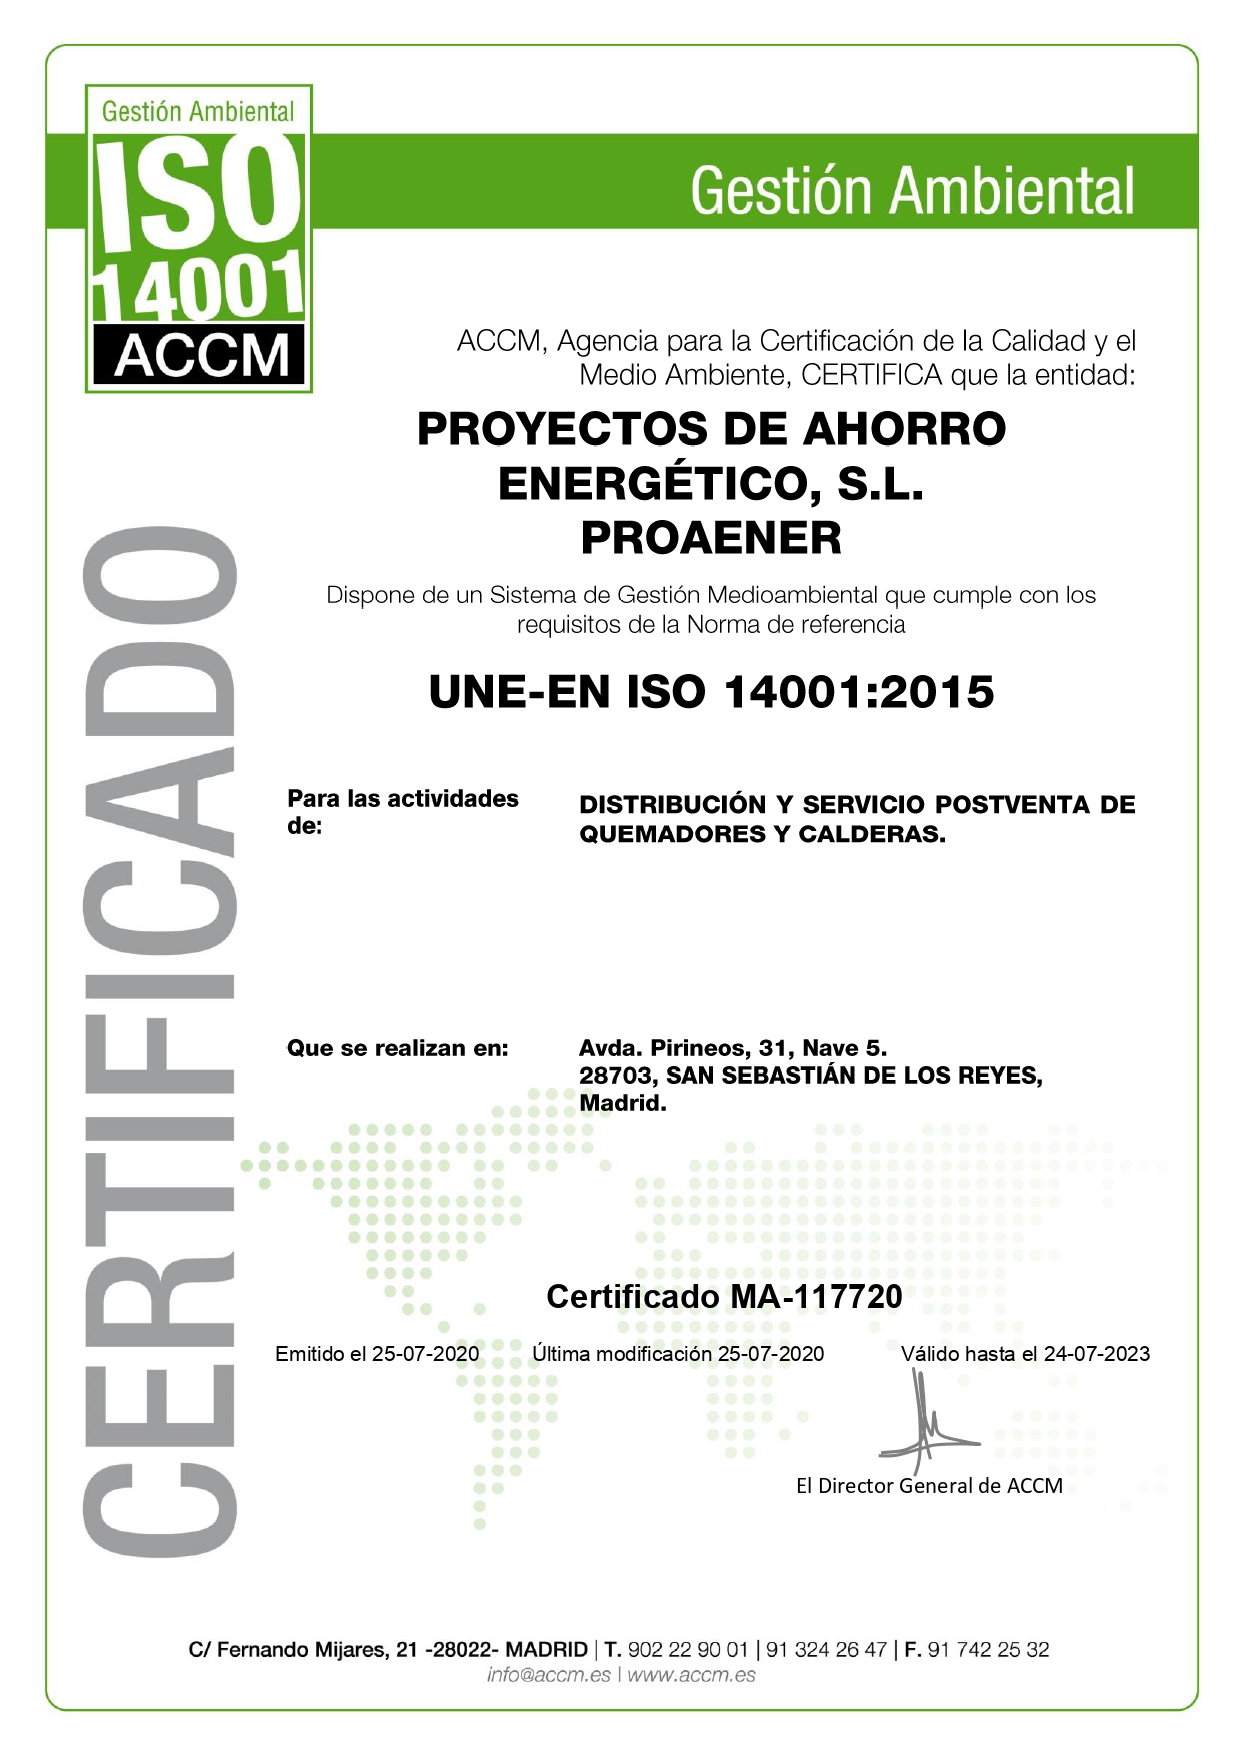 Proaener ISO 14001 - MA-117720